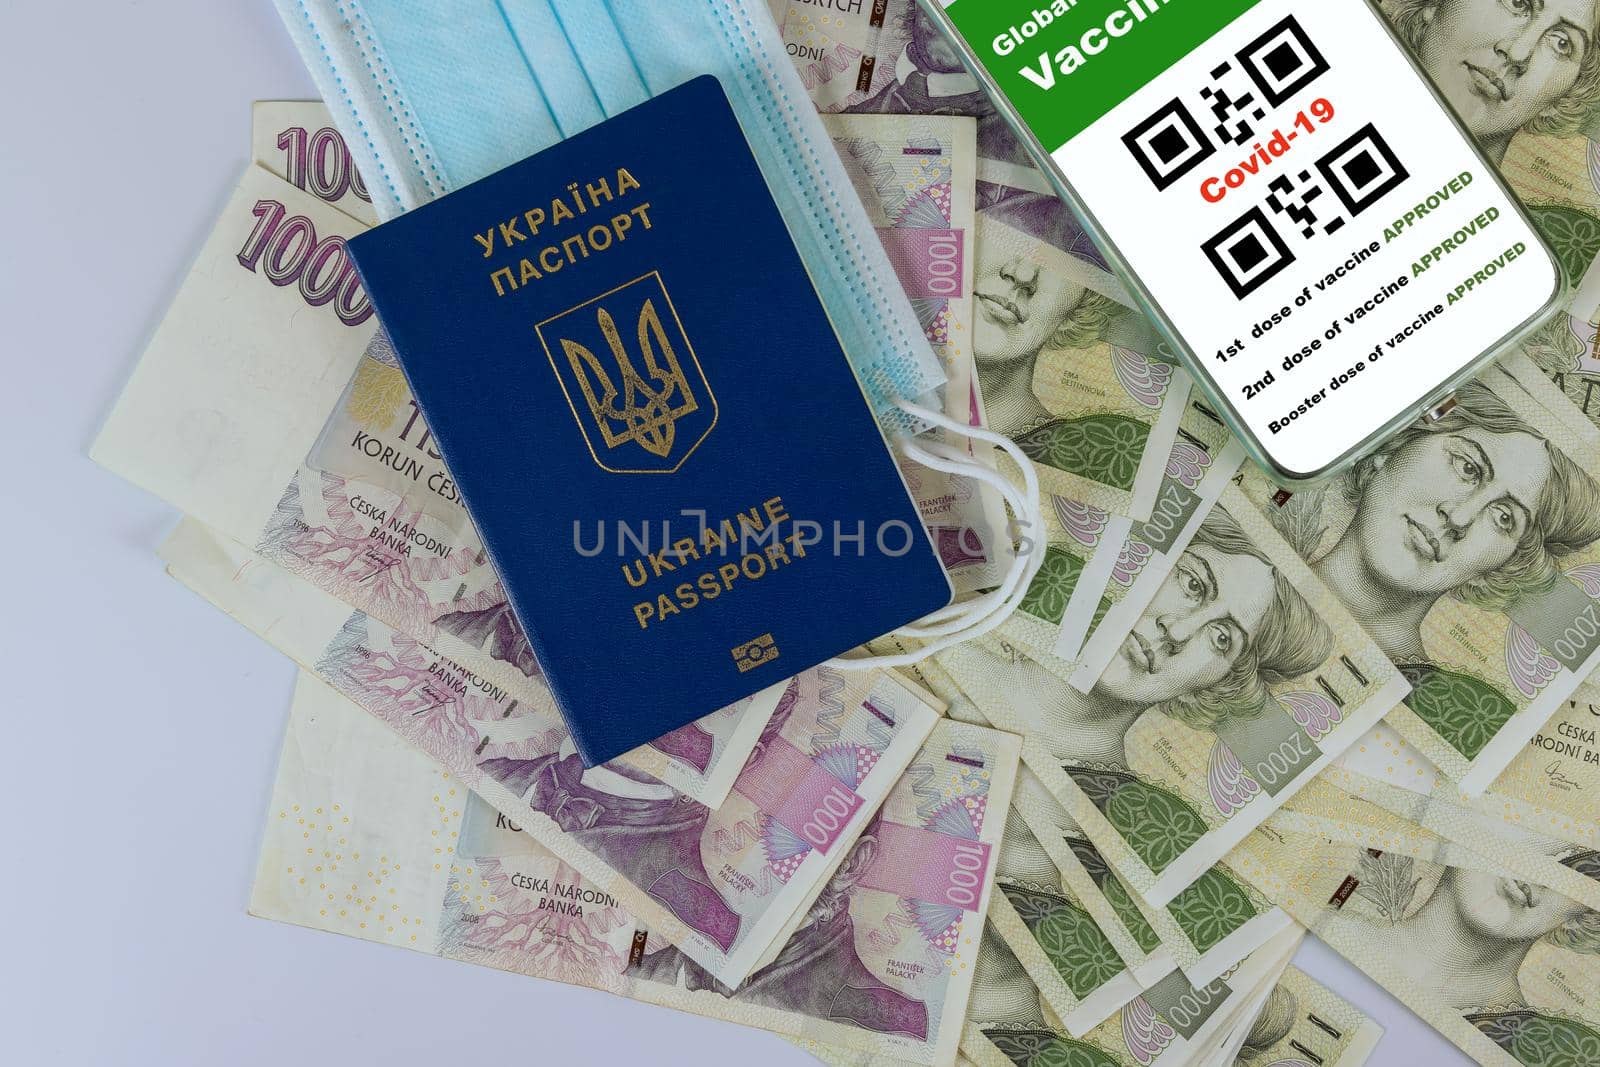 New normal travel Ukrainian passport of tourist to Czech republic with smartphone display on vaccinated COVID-19 coronavirus certificate, immunity vaccine passport of money Czech Koruna